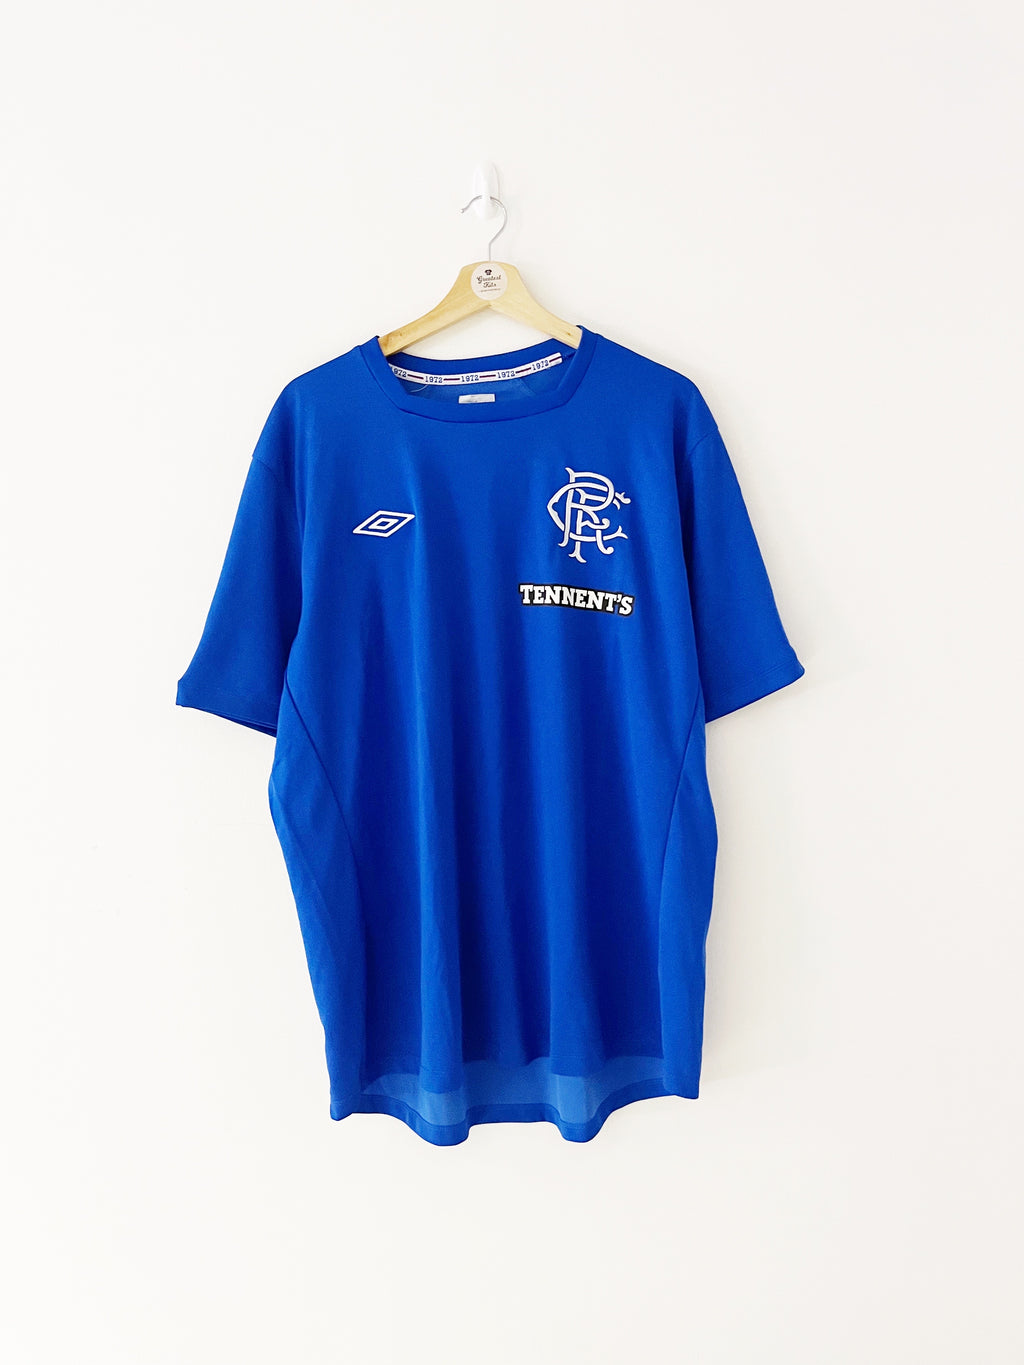 2012/13 Rangers Home Shirt (XXL) 9/10